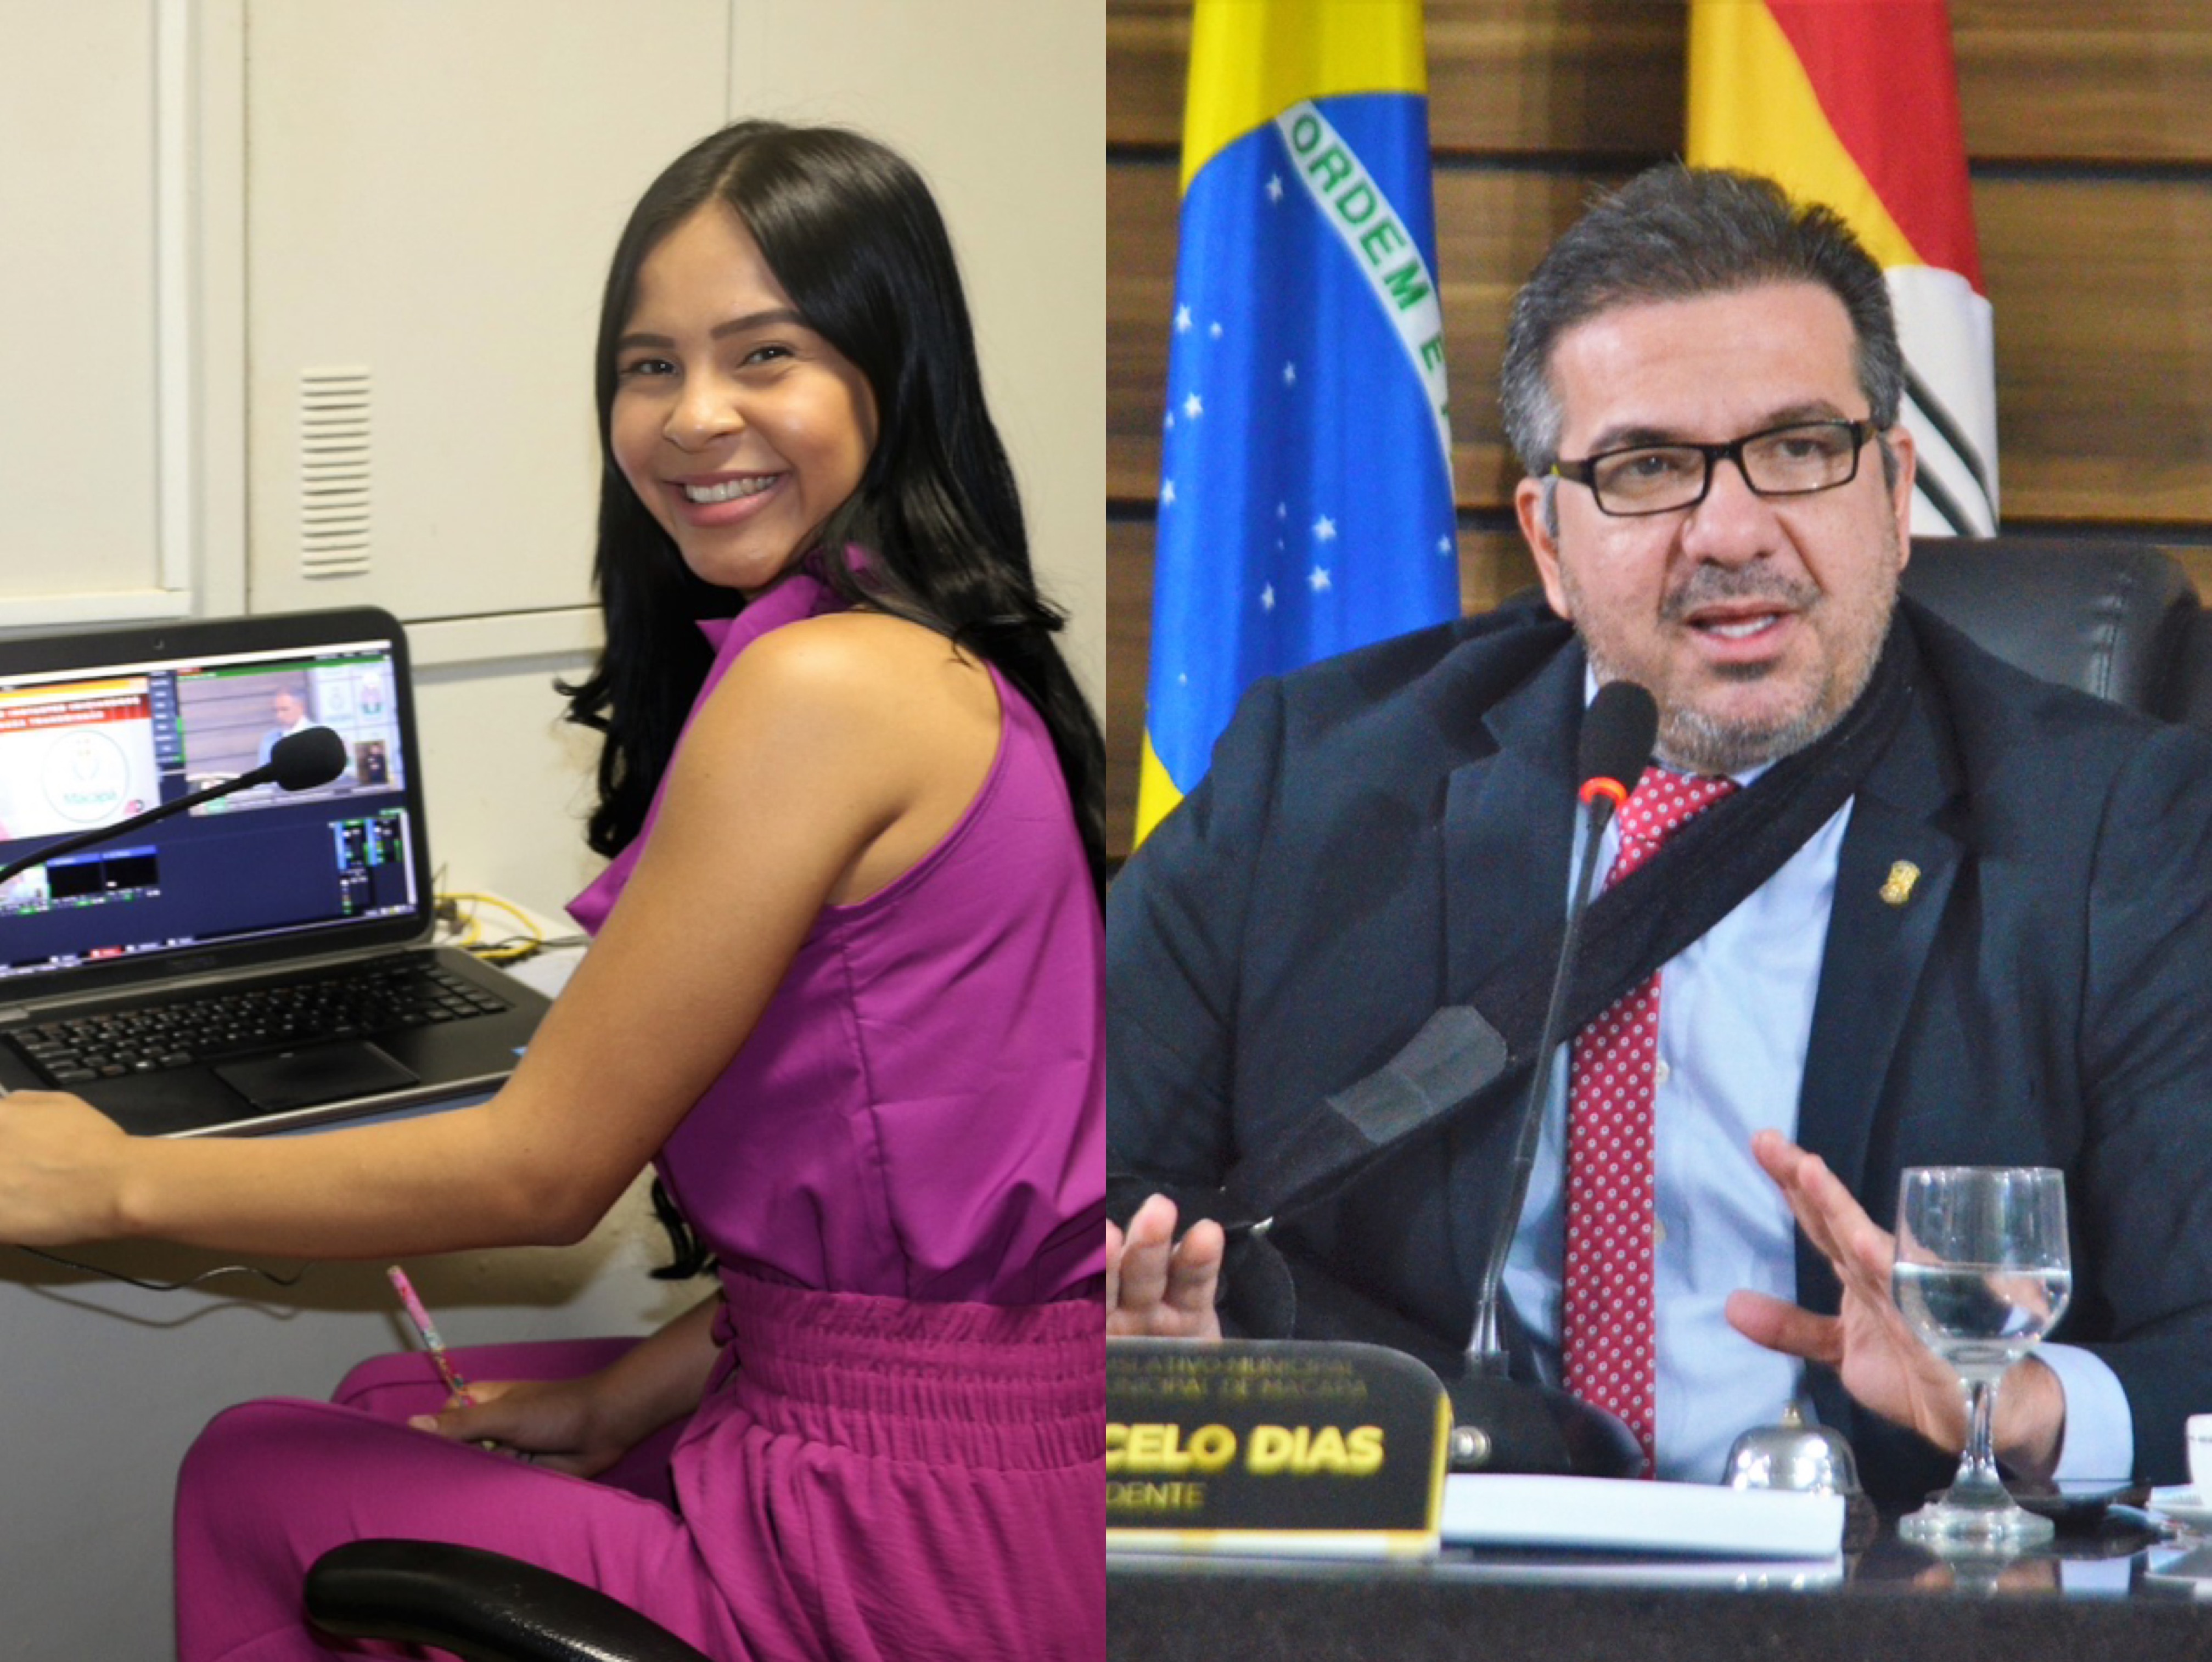 Câmara Municipal de Macapá inova ao implantar serviço de áudio-descrição nas transmissões das sessões legislativas